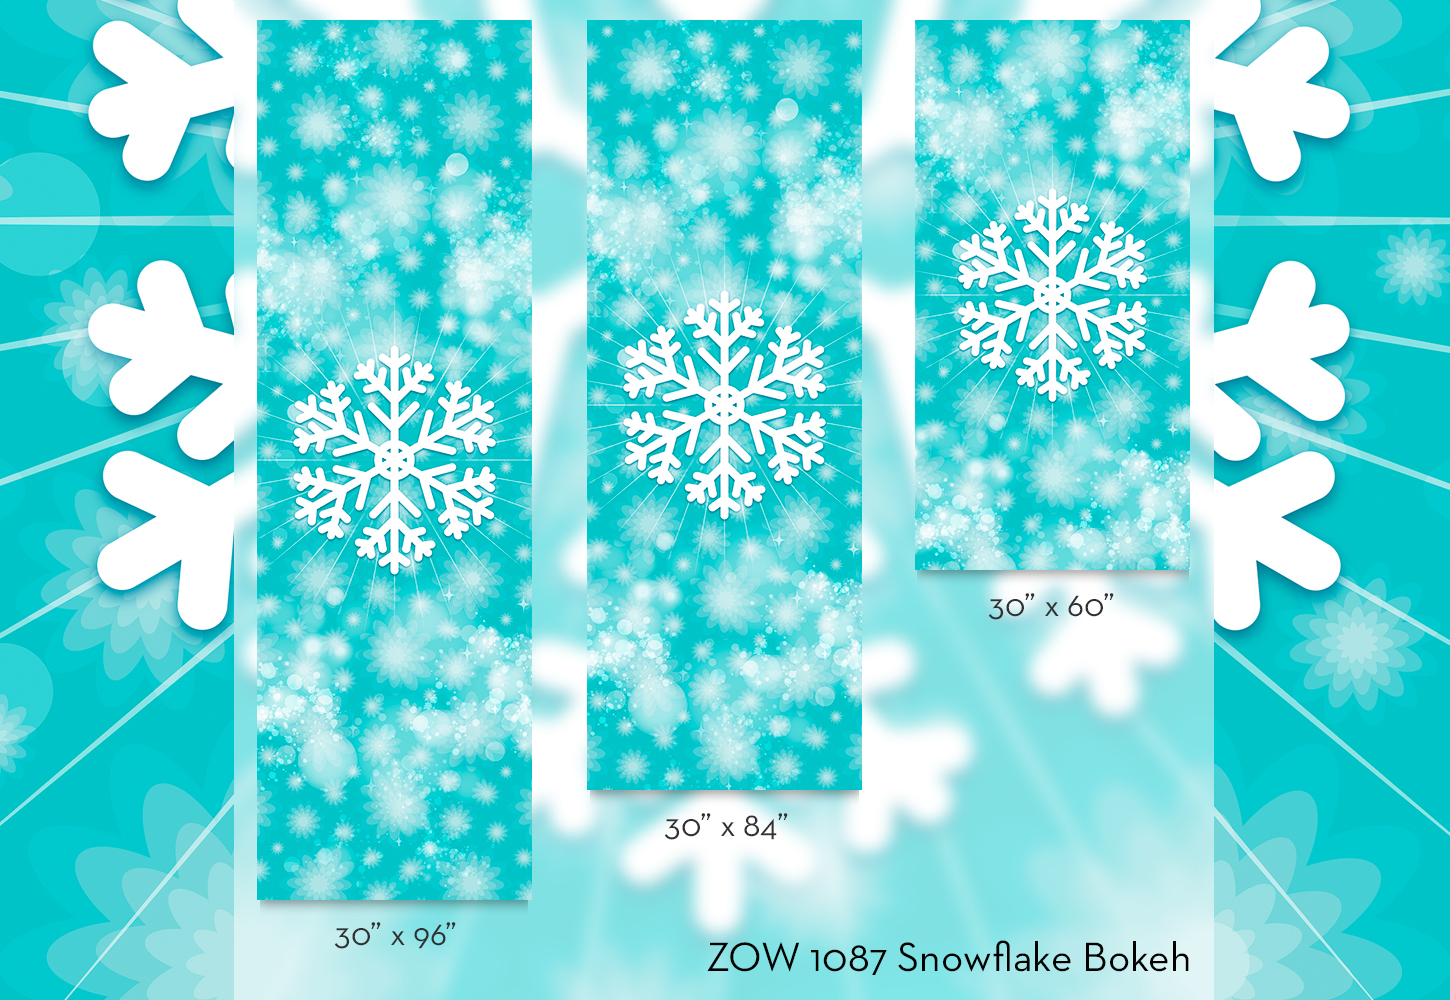 ZOW 1087 Snowflake Bokeh